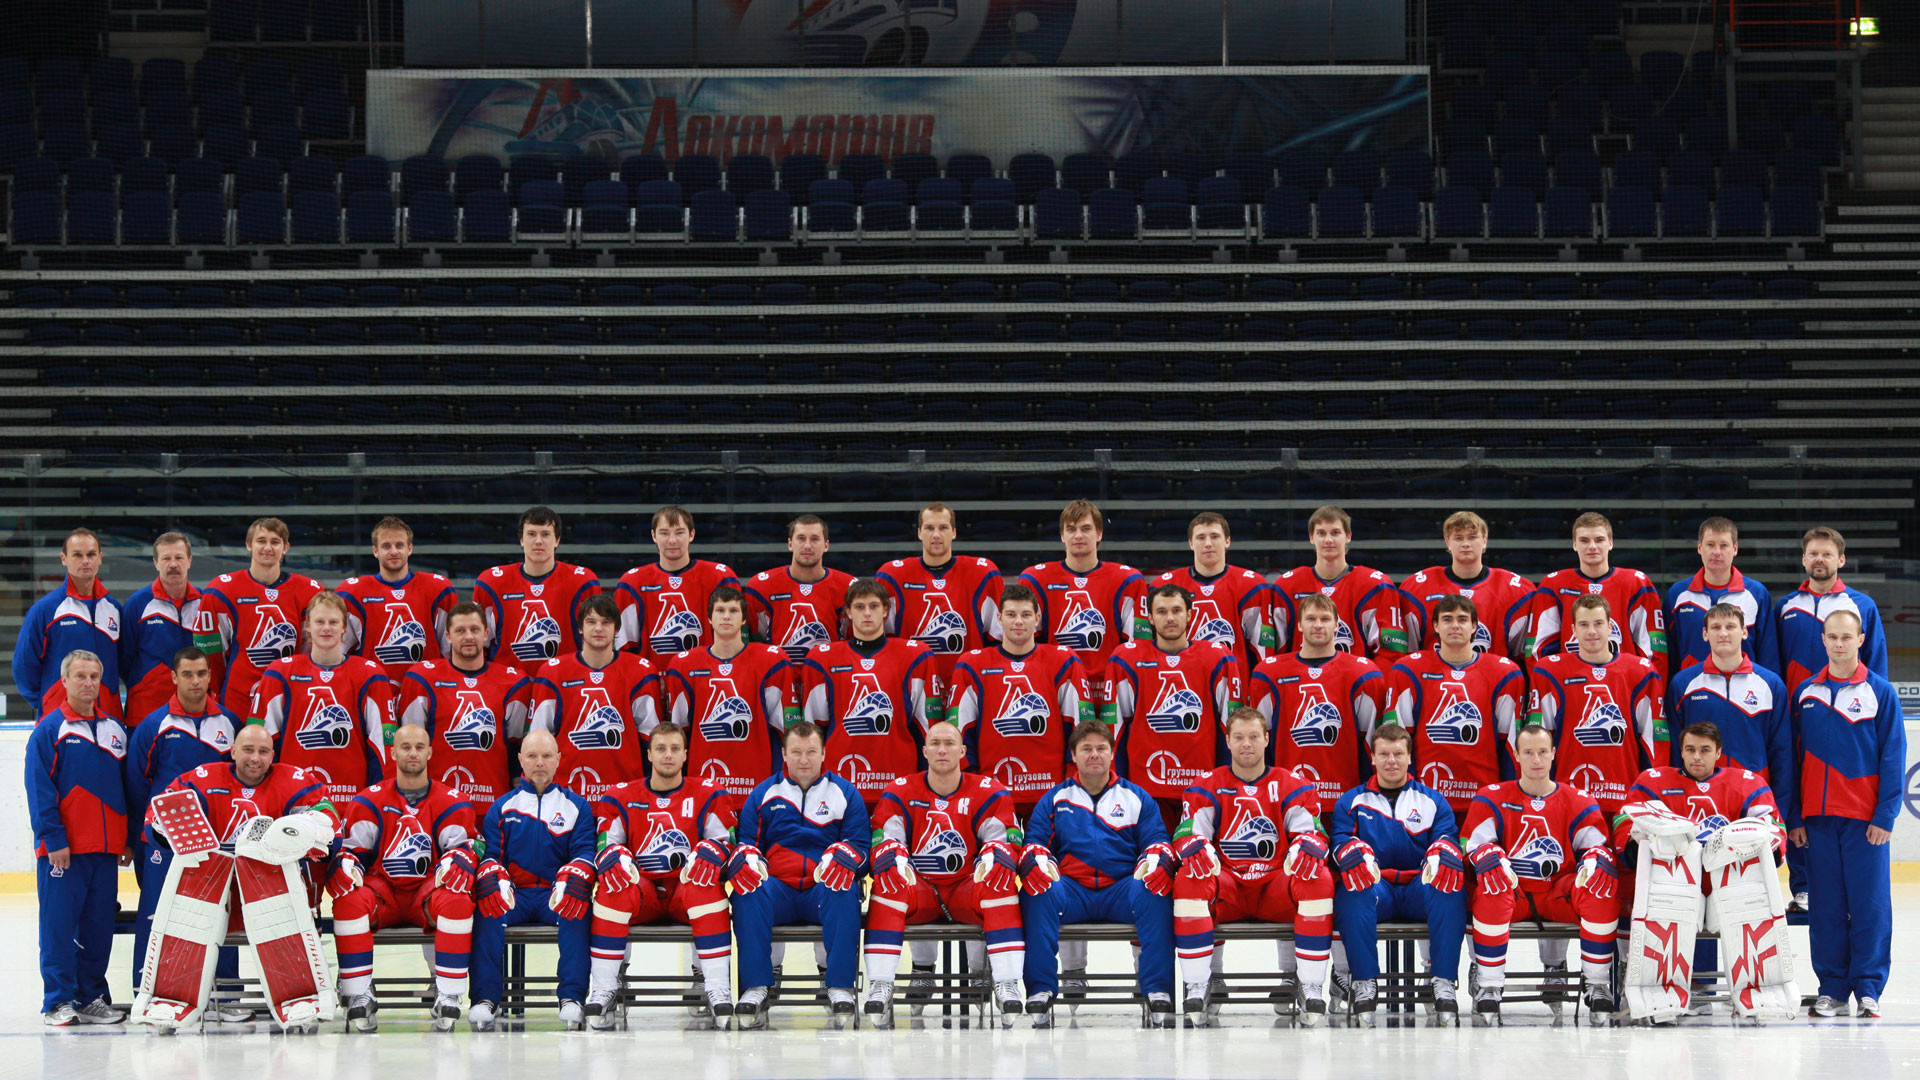 Члены хоккейного клуба "Локомотив" во время официальной предсезонной фотосессии 21 августа 2011 года. Фото: © РИА Новости/Ярослав Неелов